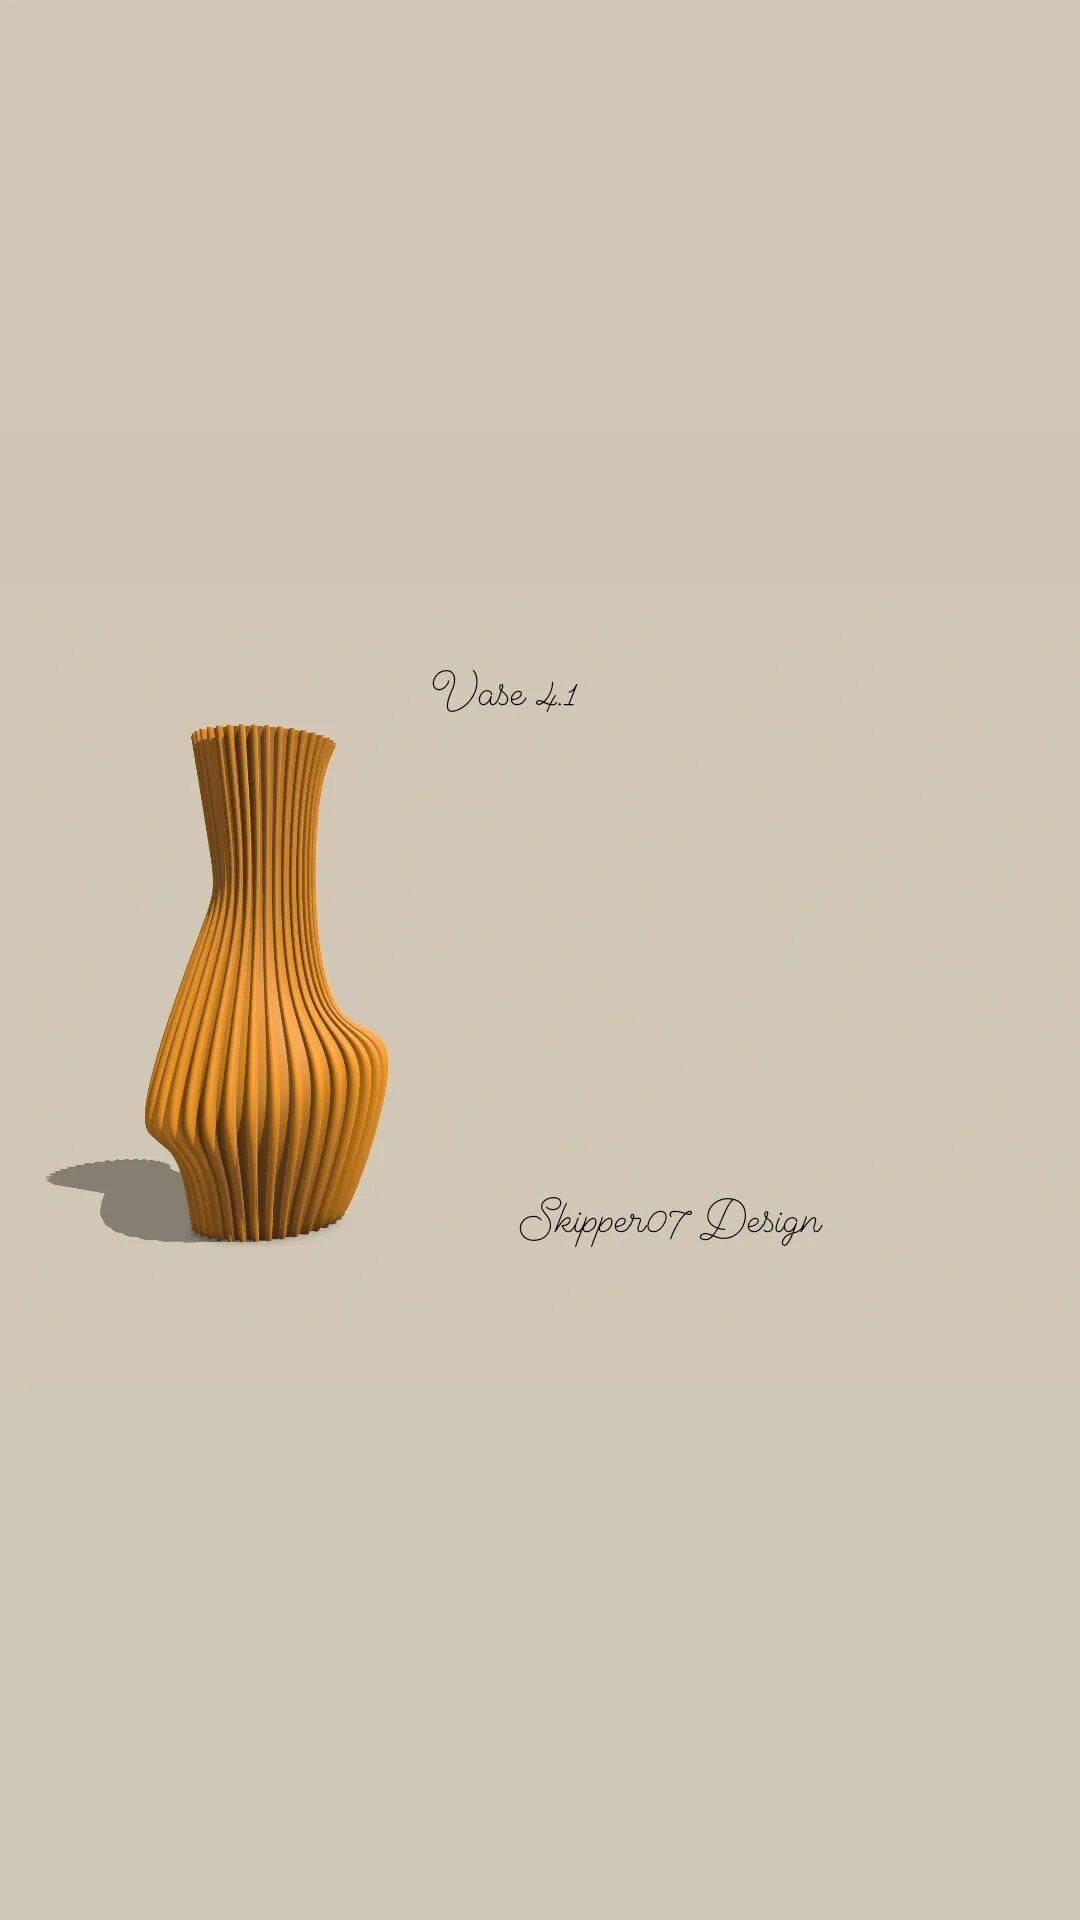 Vase 4.1.stl 3d model